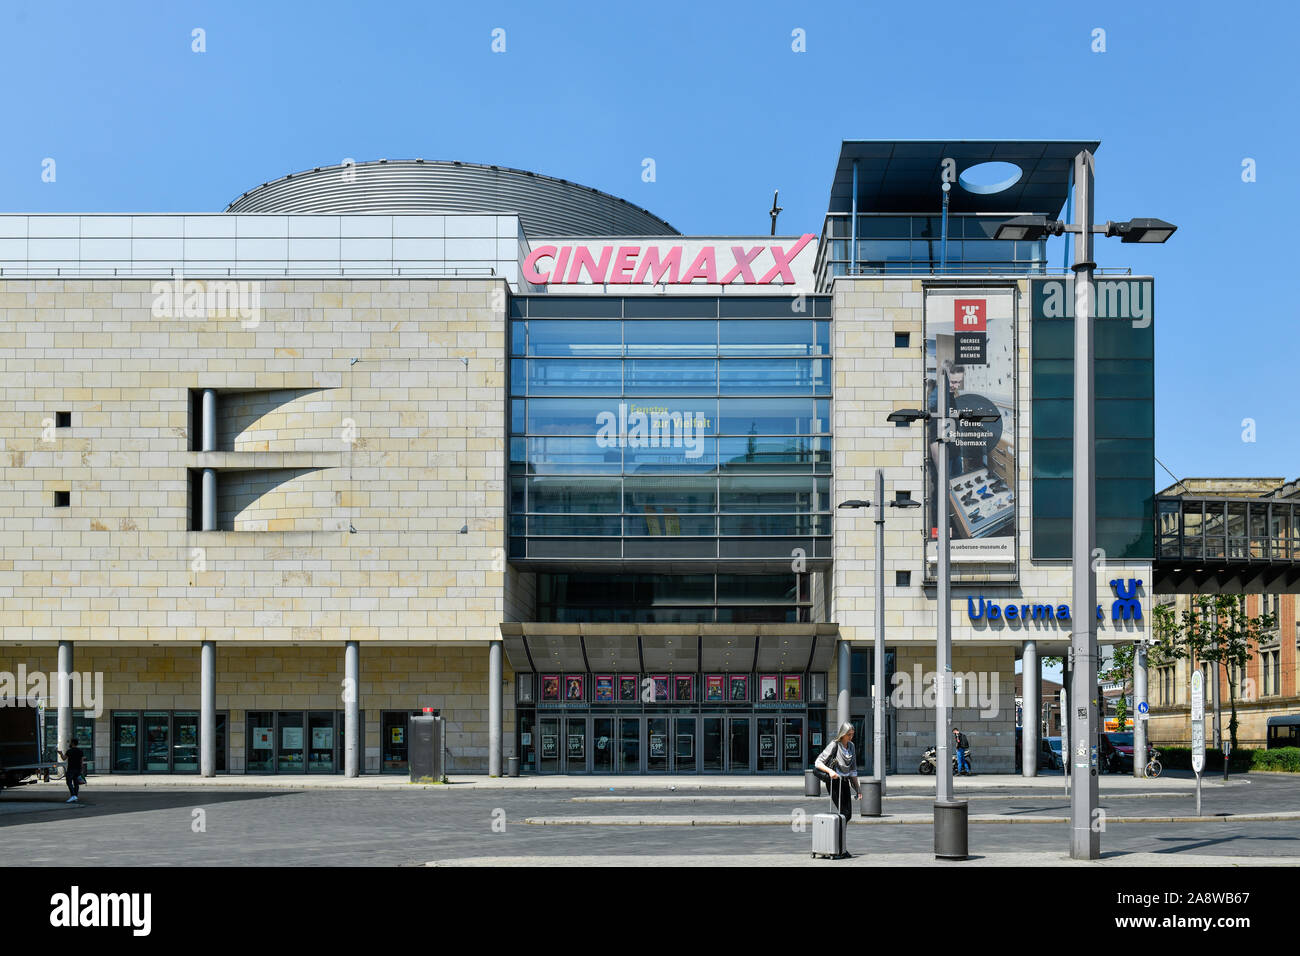 Übermaxx und Cinemaxx, Bahnhofsplatz, Bremen, Deutschland Stock Photo